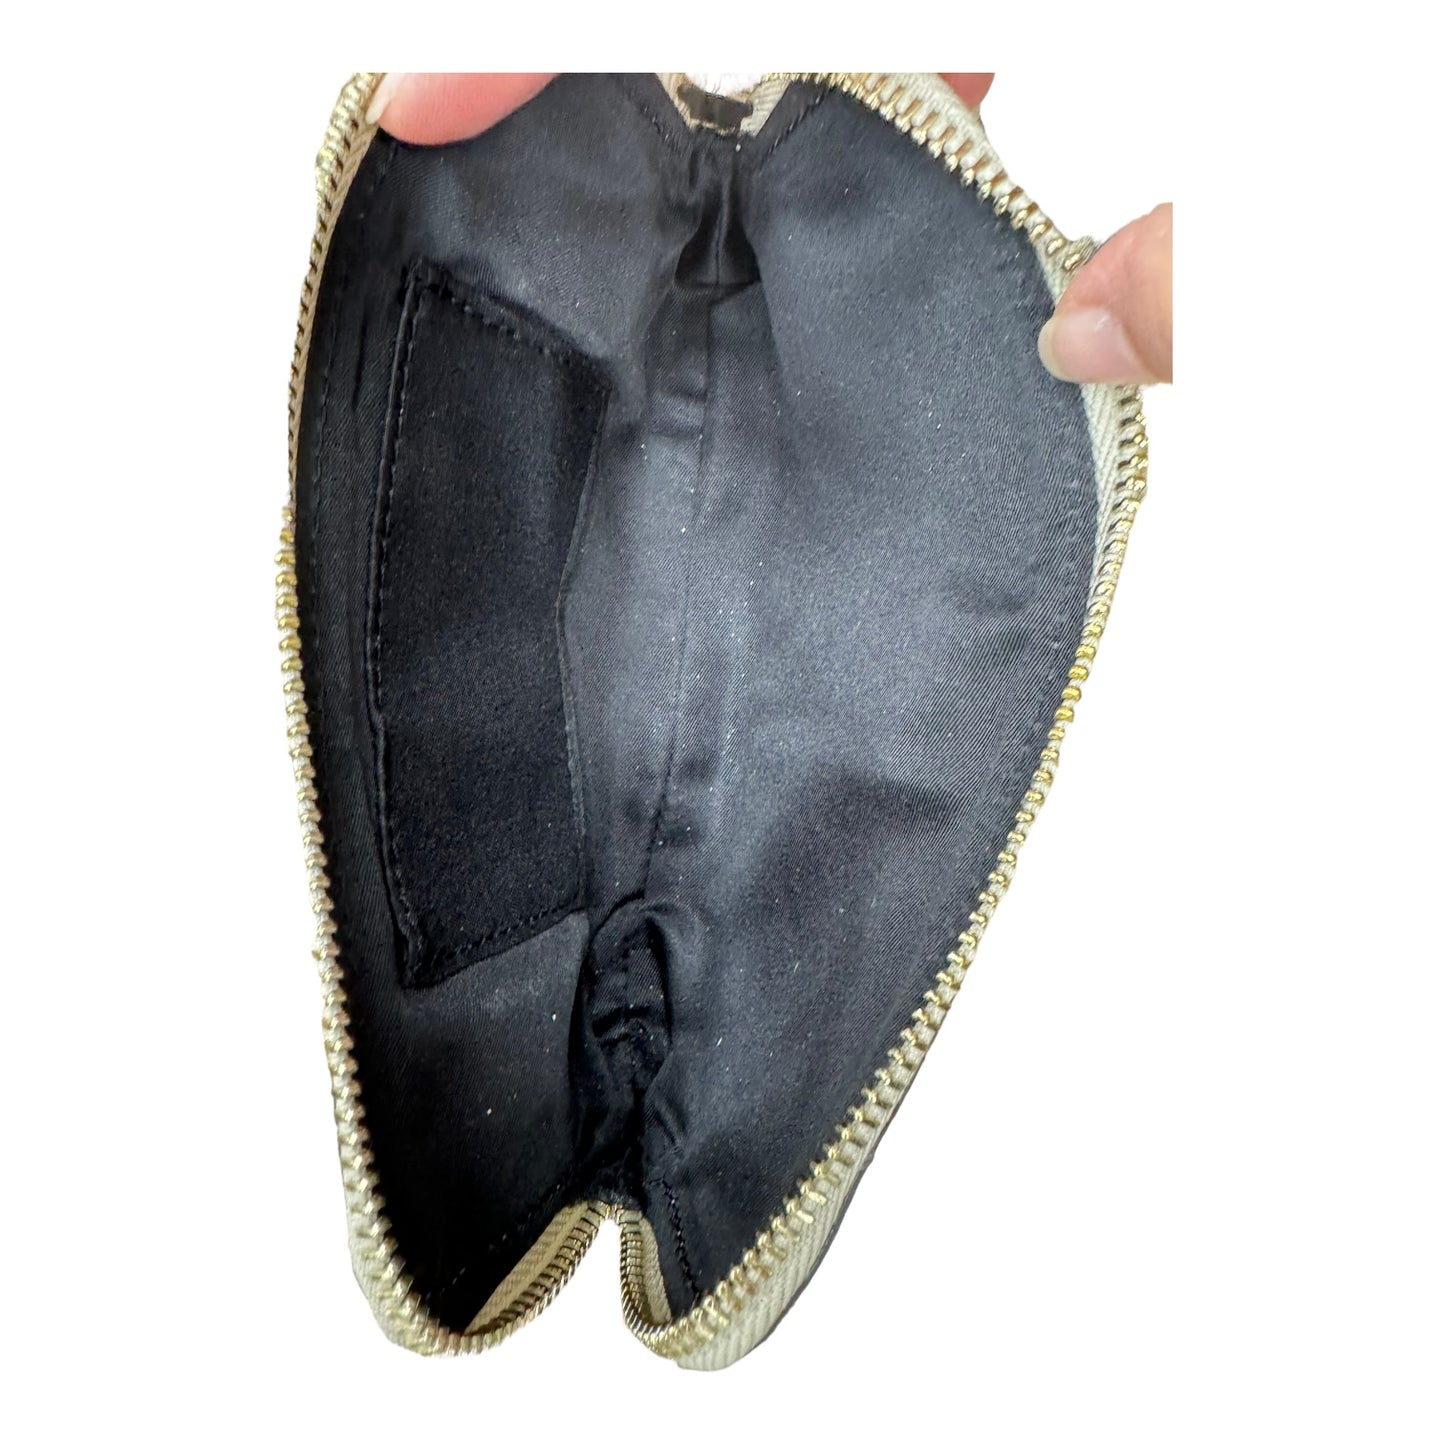 Belt Bag Designer By Kate Spade  Size: Large